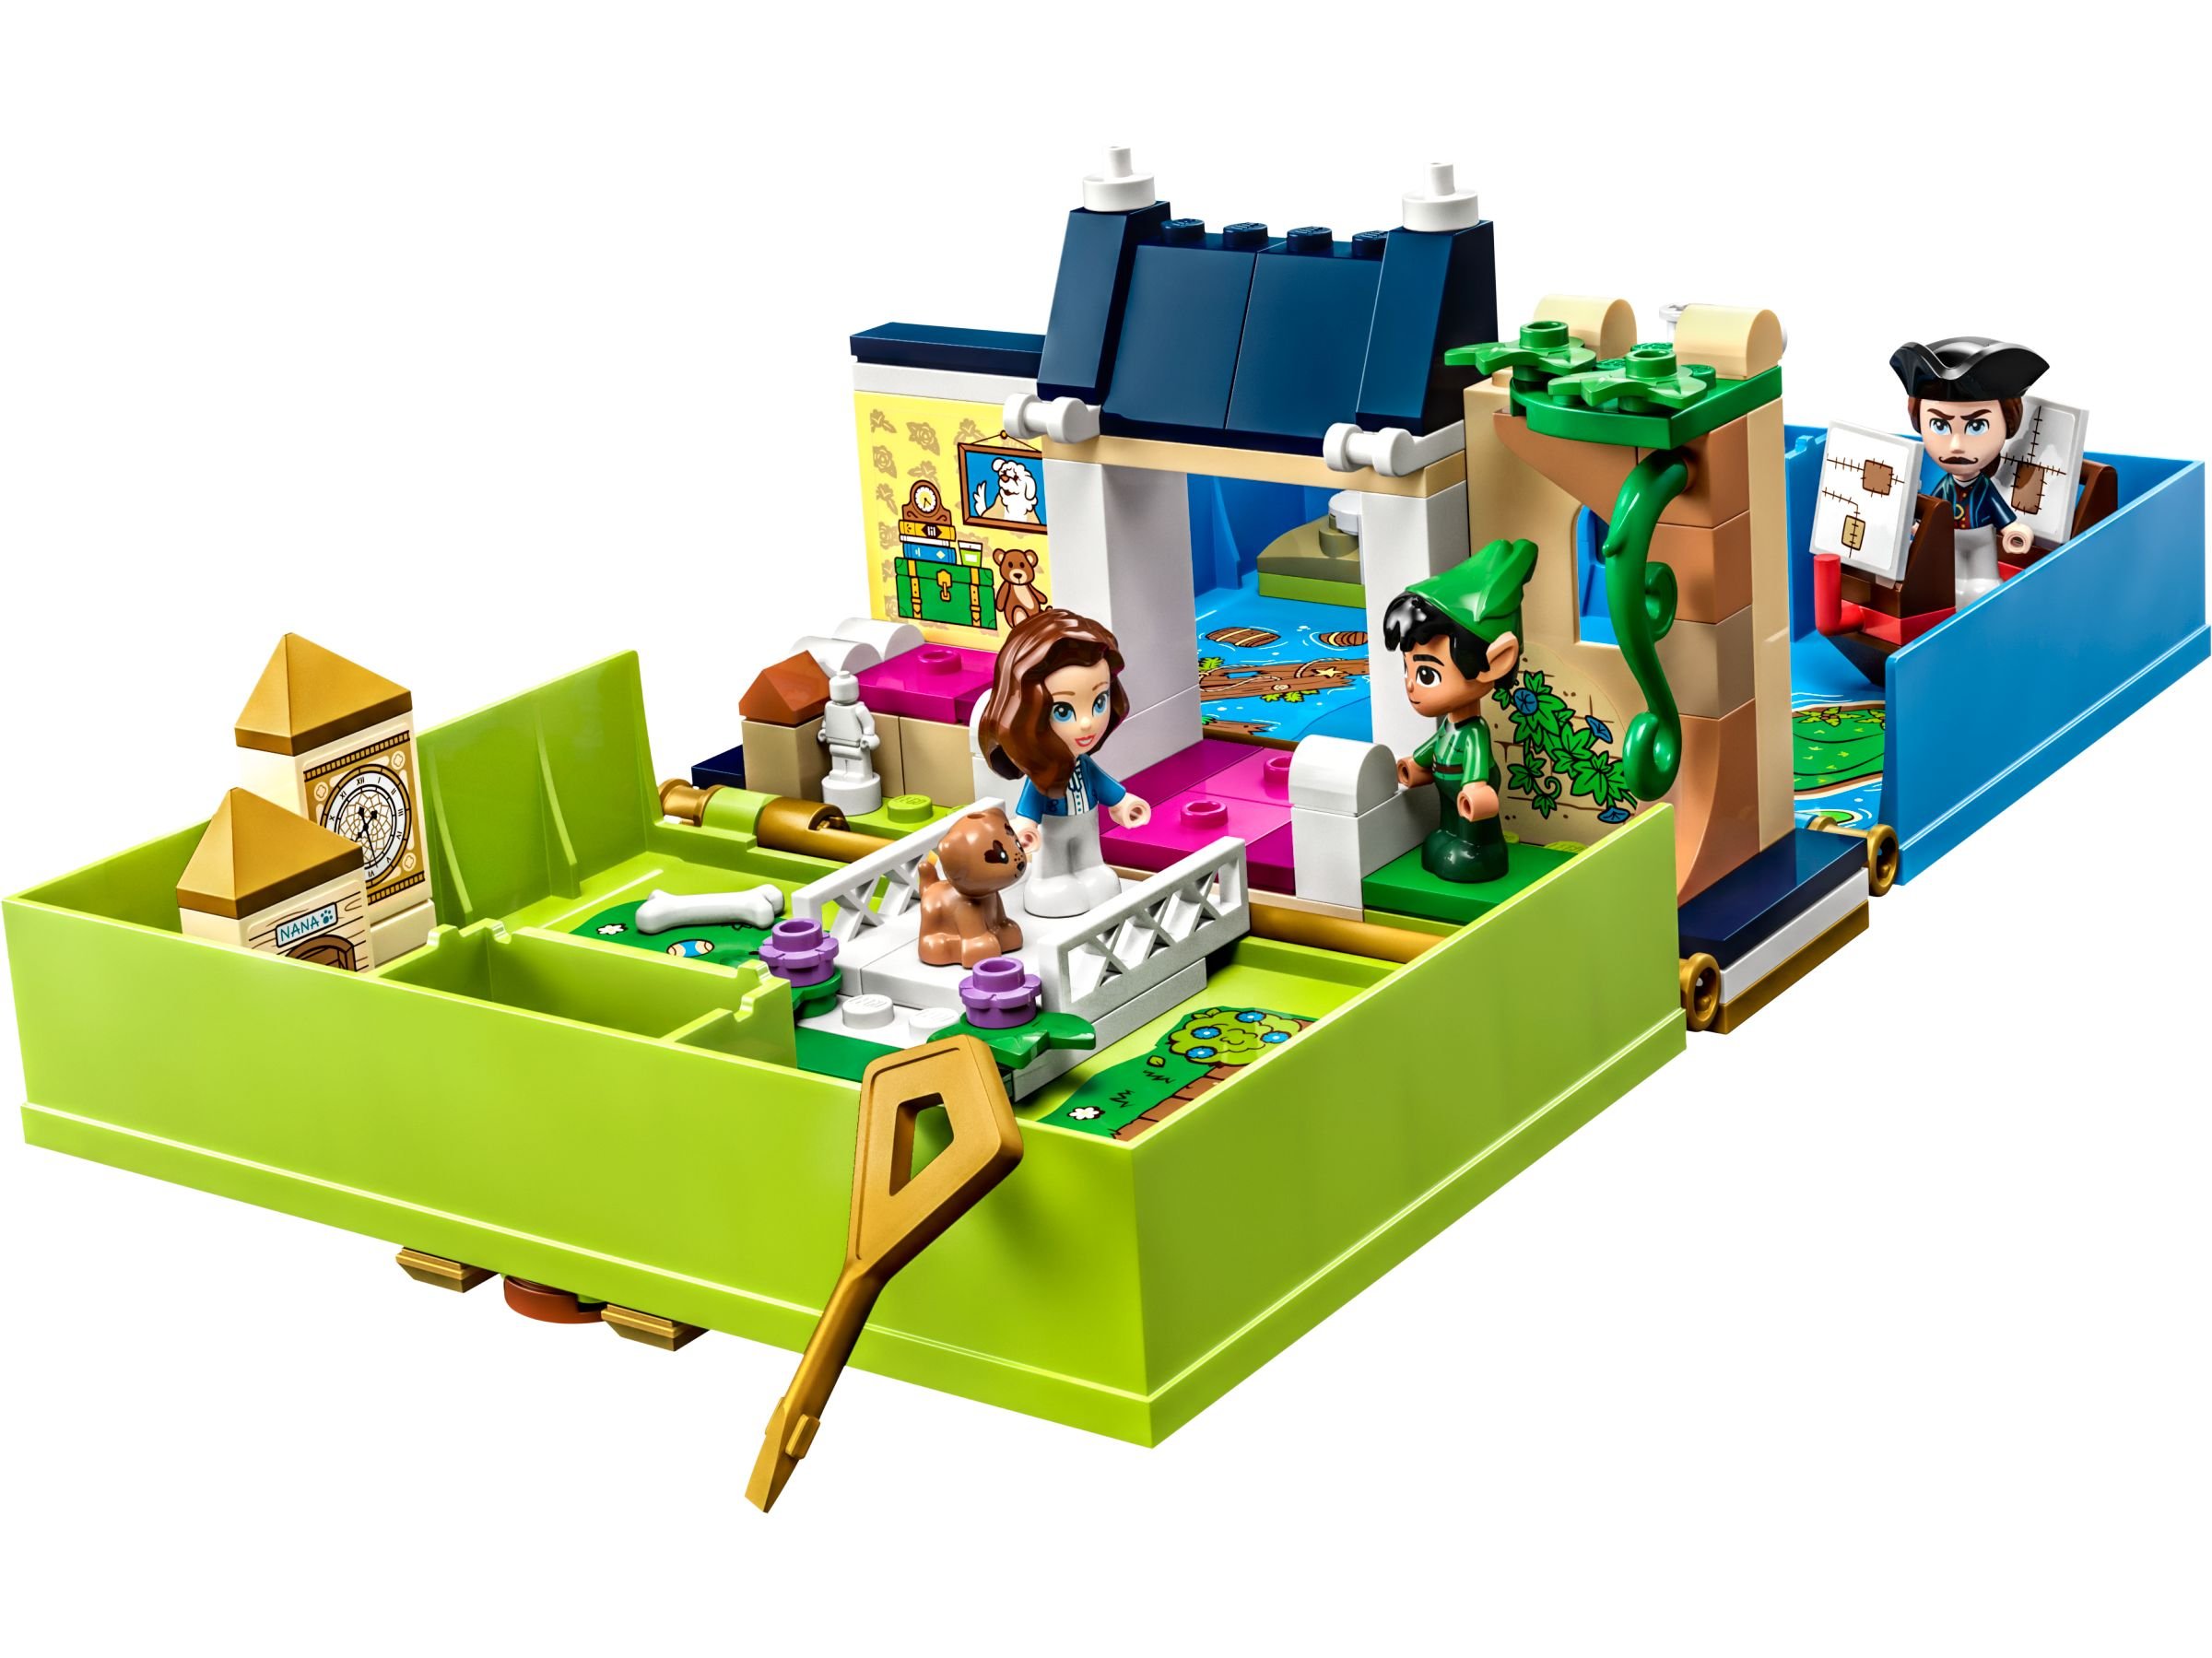 LEGO Disney 43220 Peter Pan & Wendy – Märchenbuch-Abenteuer